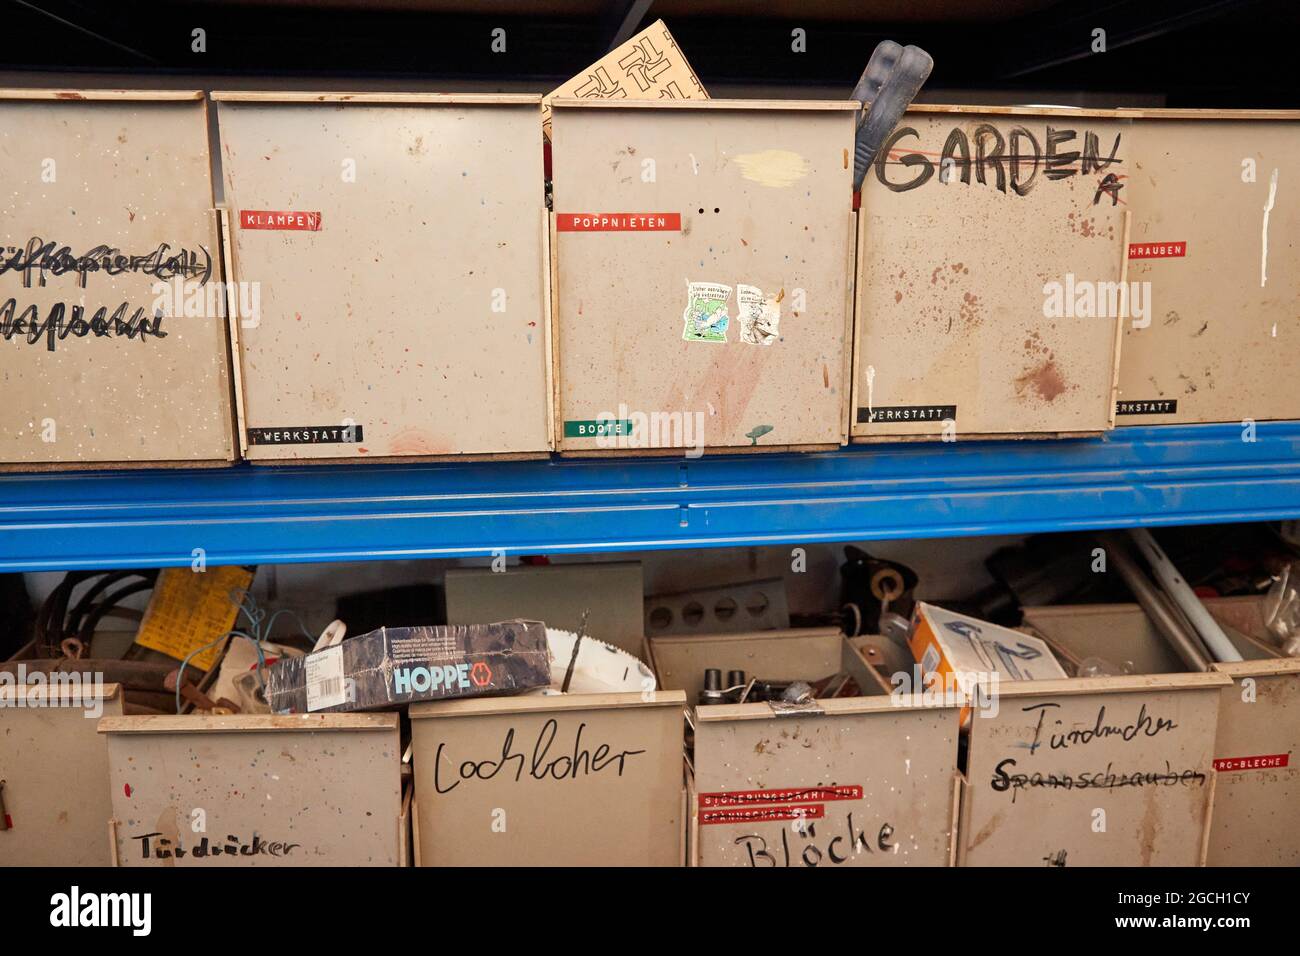 04 agosto 2021, Schleswig-Holstein, Plön: Scatole con etichette come 'chäkell, Klampen, Böcke' stand su uno scaffale nel laboratorio della scuola di vela a Plön. Foto: Georg Wendt/dpa Foto Stock